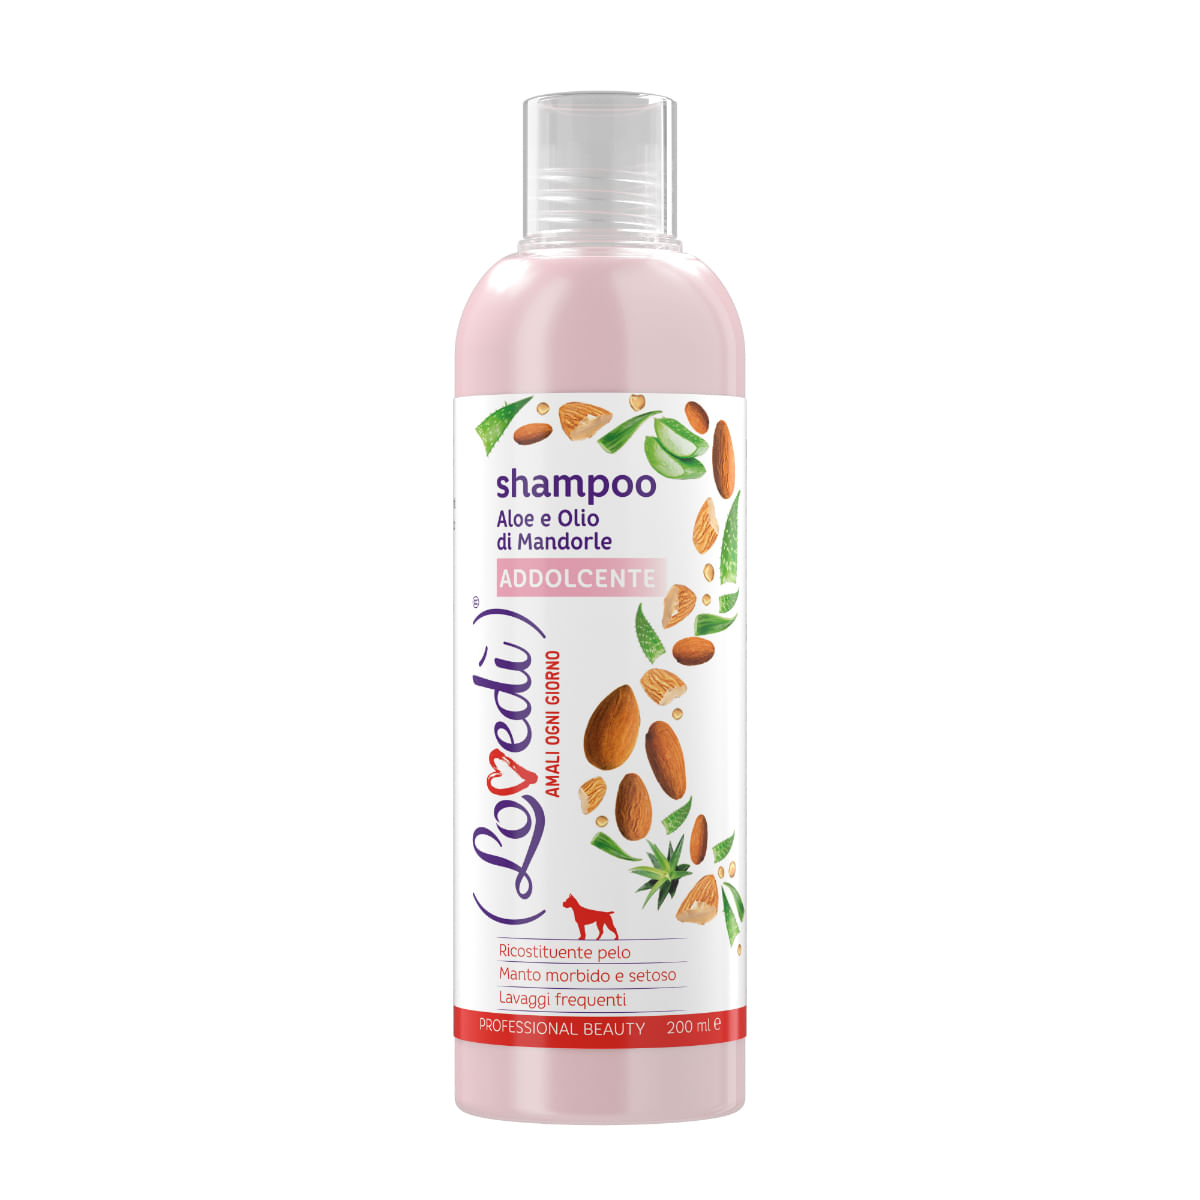 Shampoo per Cane Addolcente con Aloe e Olio di Mandorle 200ML